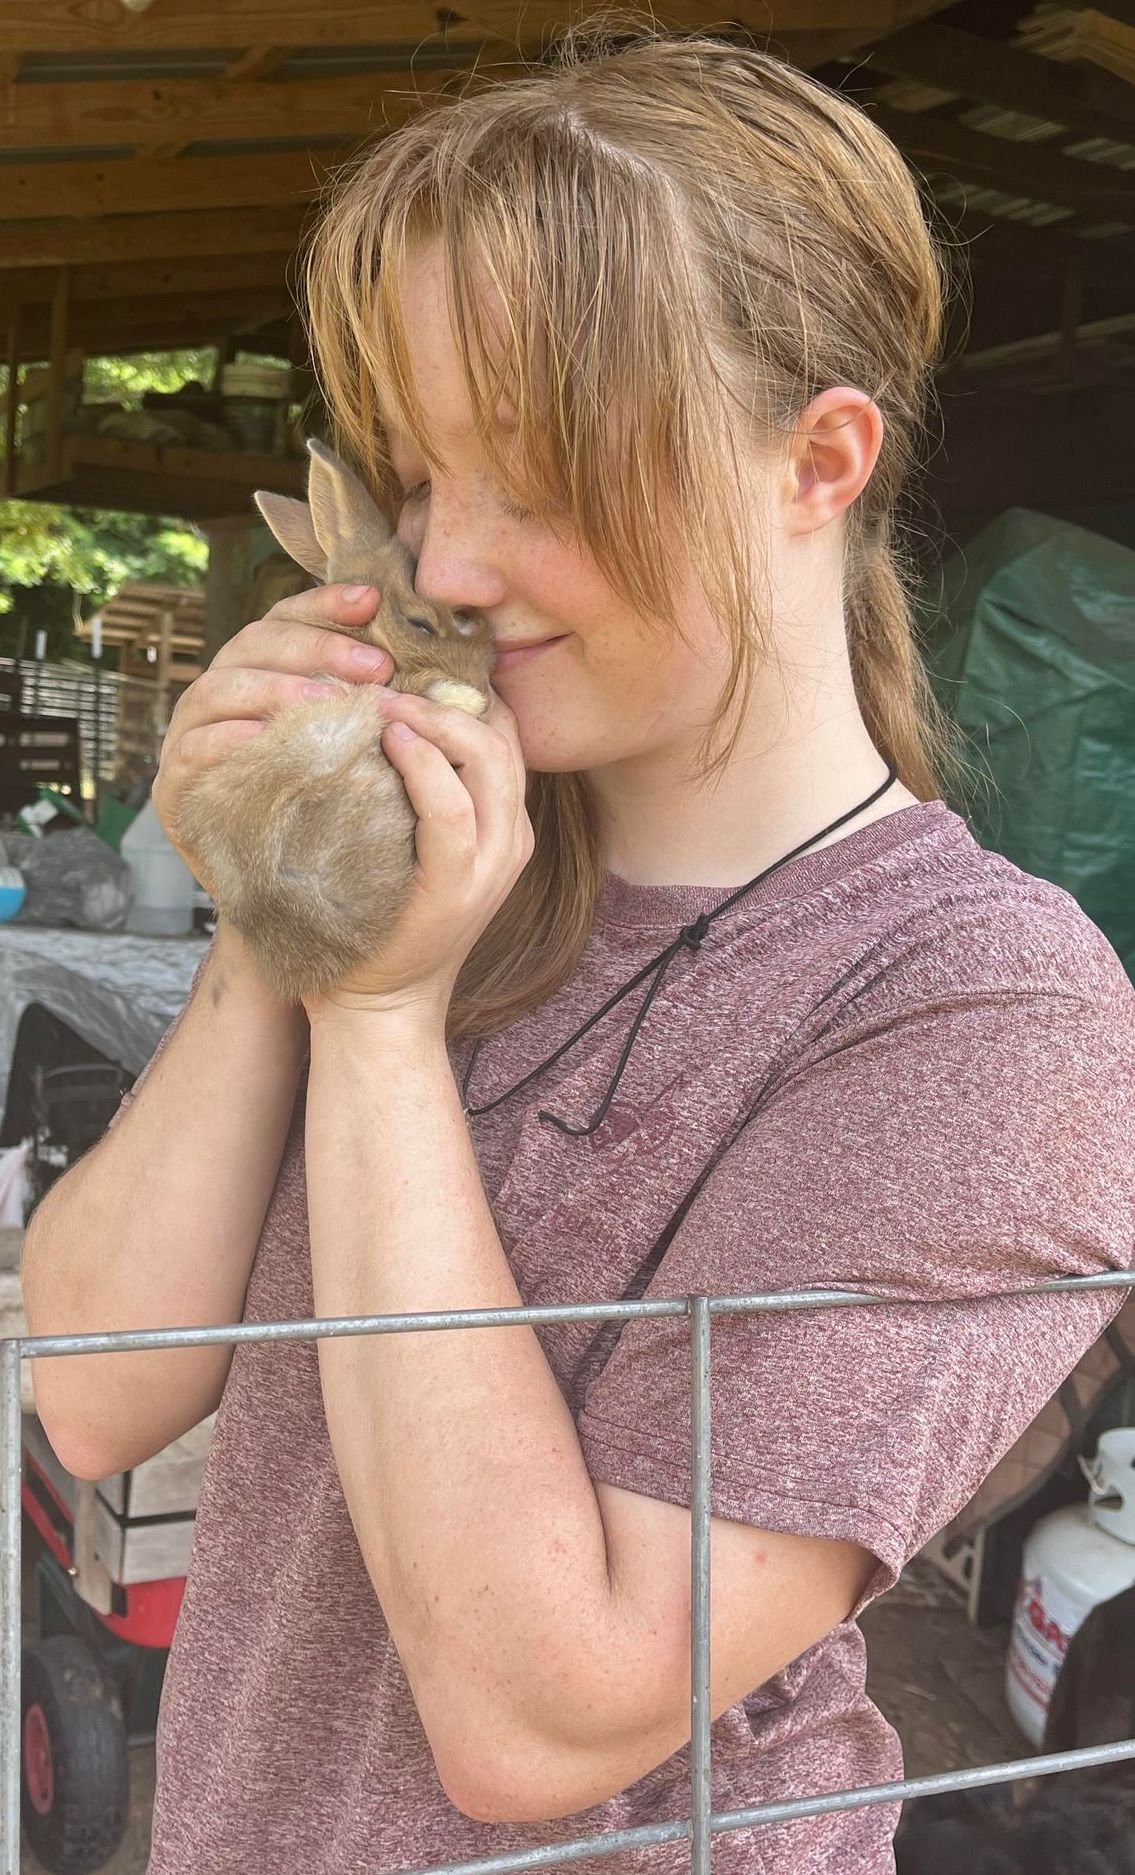 avery holding baby bunny.jpg